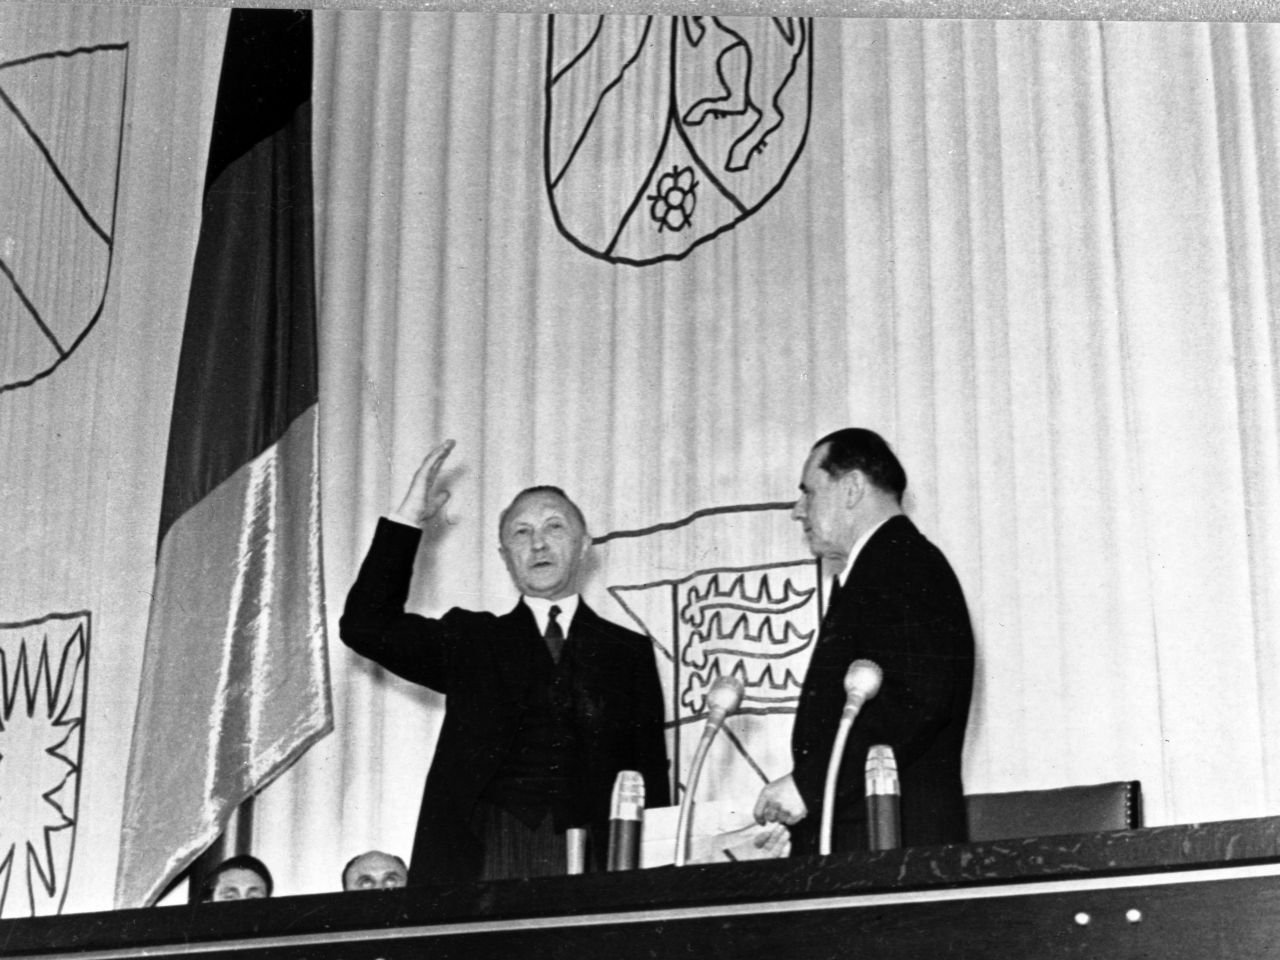 Fotografie der Vereidigung von Bundeskanzler Konrad Adenauer vor dem Deutschen Bundestag durch Bundestagspräsident Erich Köhler, 20. September 1949.